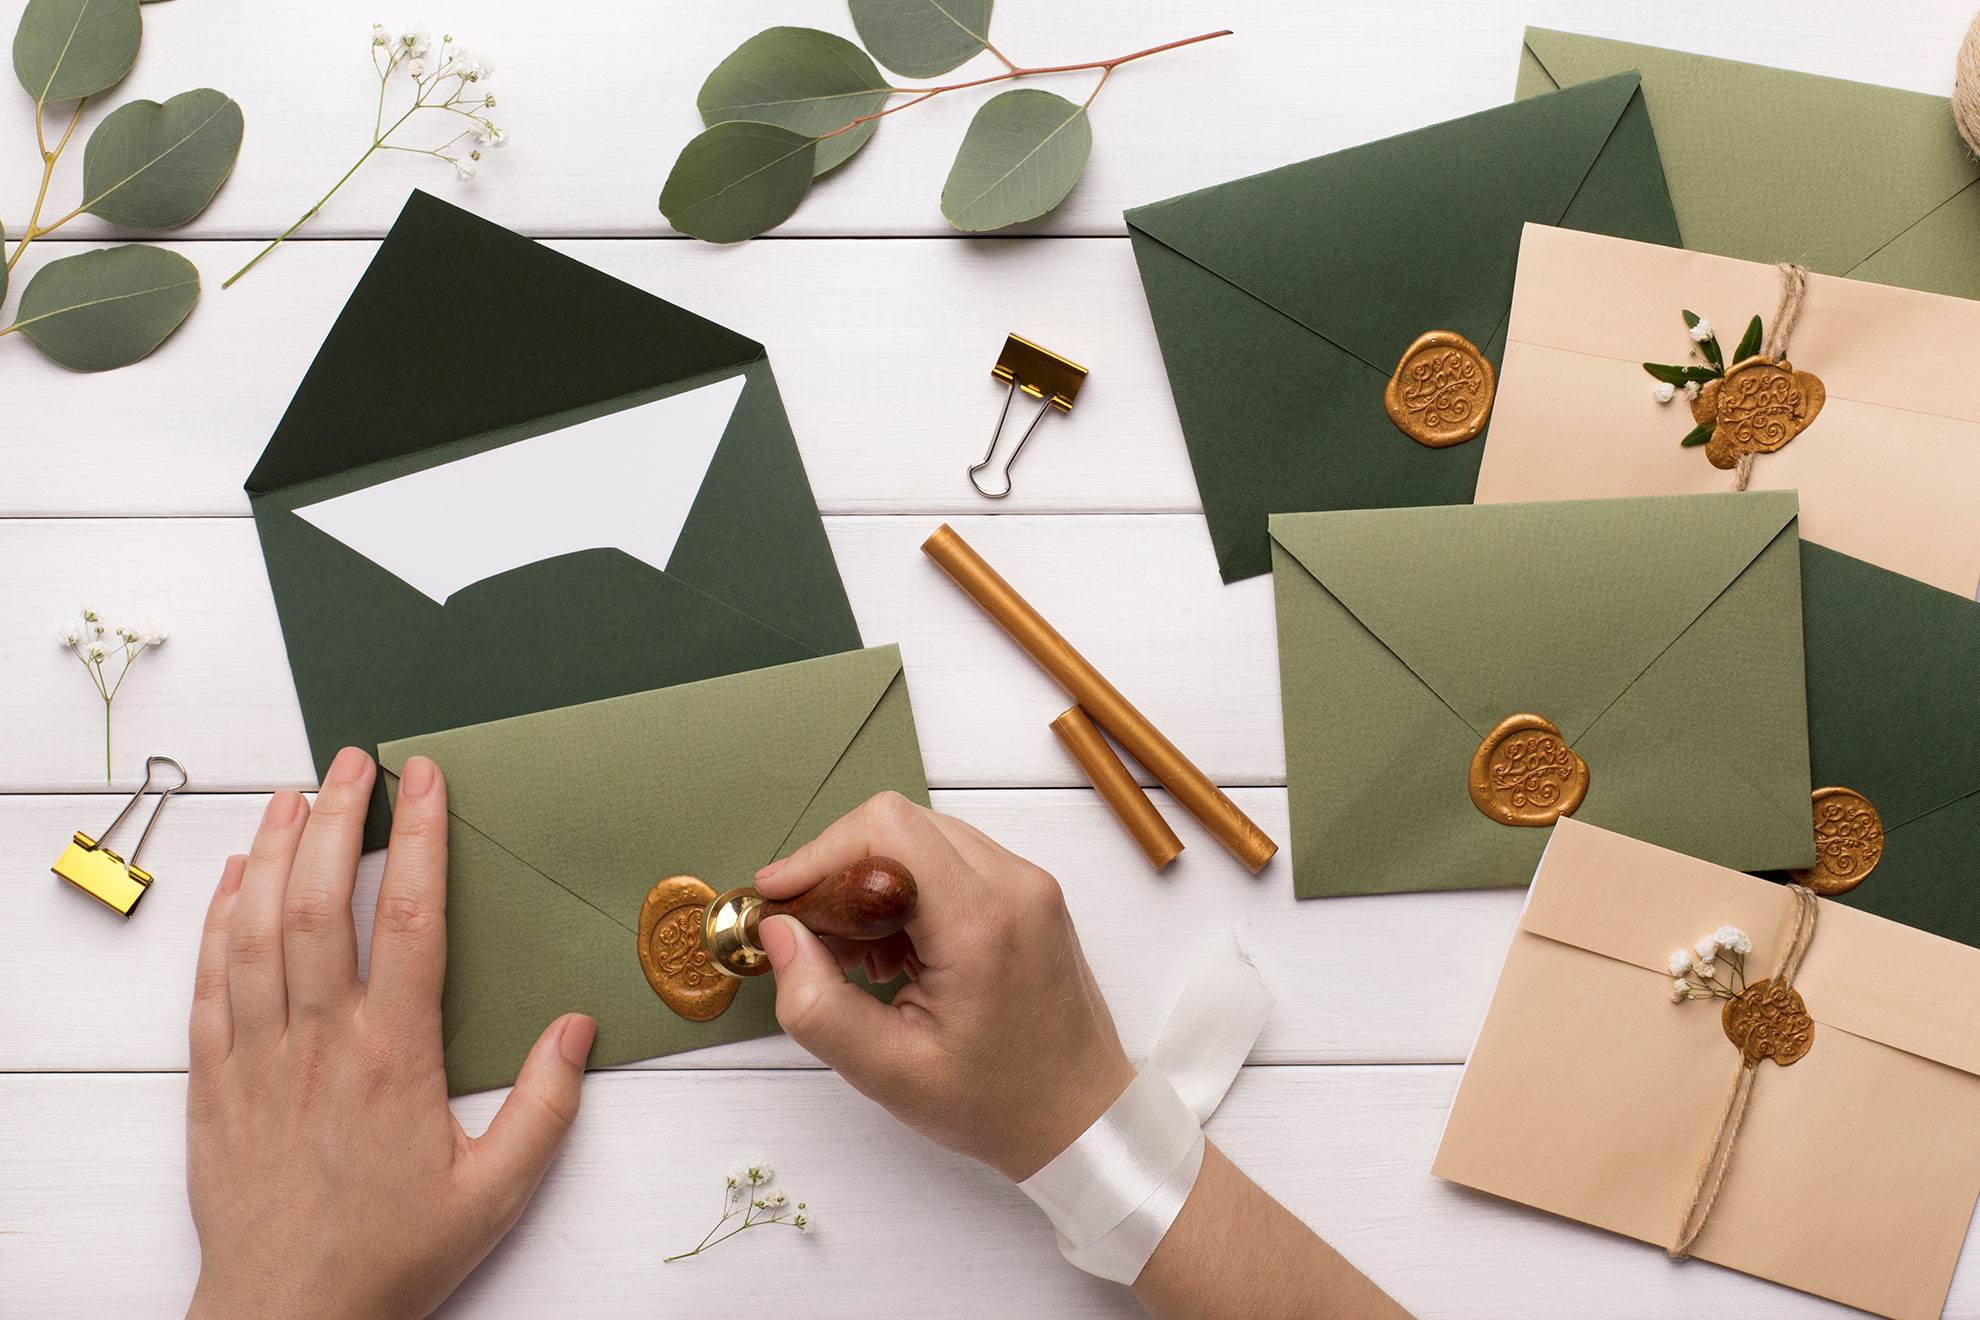 Przygotowywanie listów z zaproszeniami, ilustracja do artykułu o pisaniu zaproszeń na imieniny